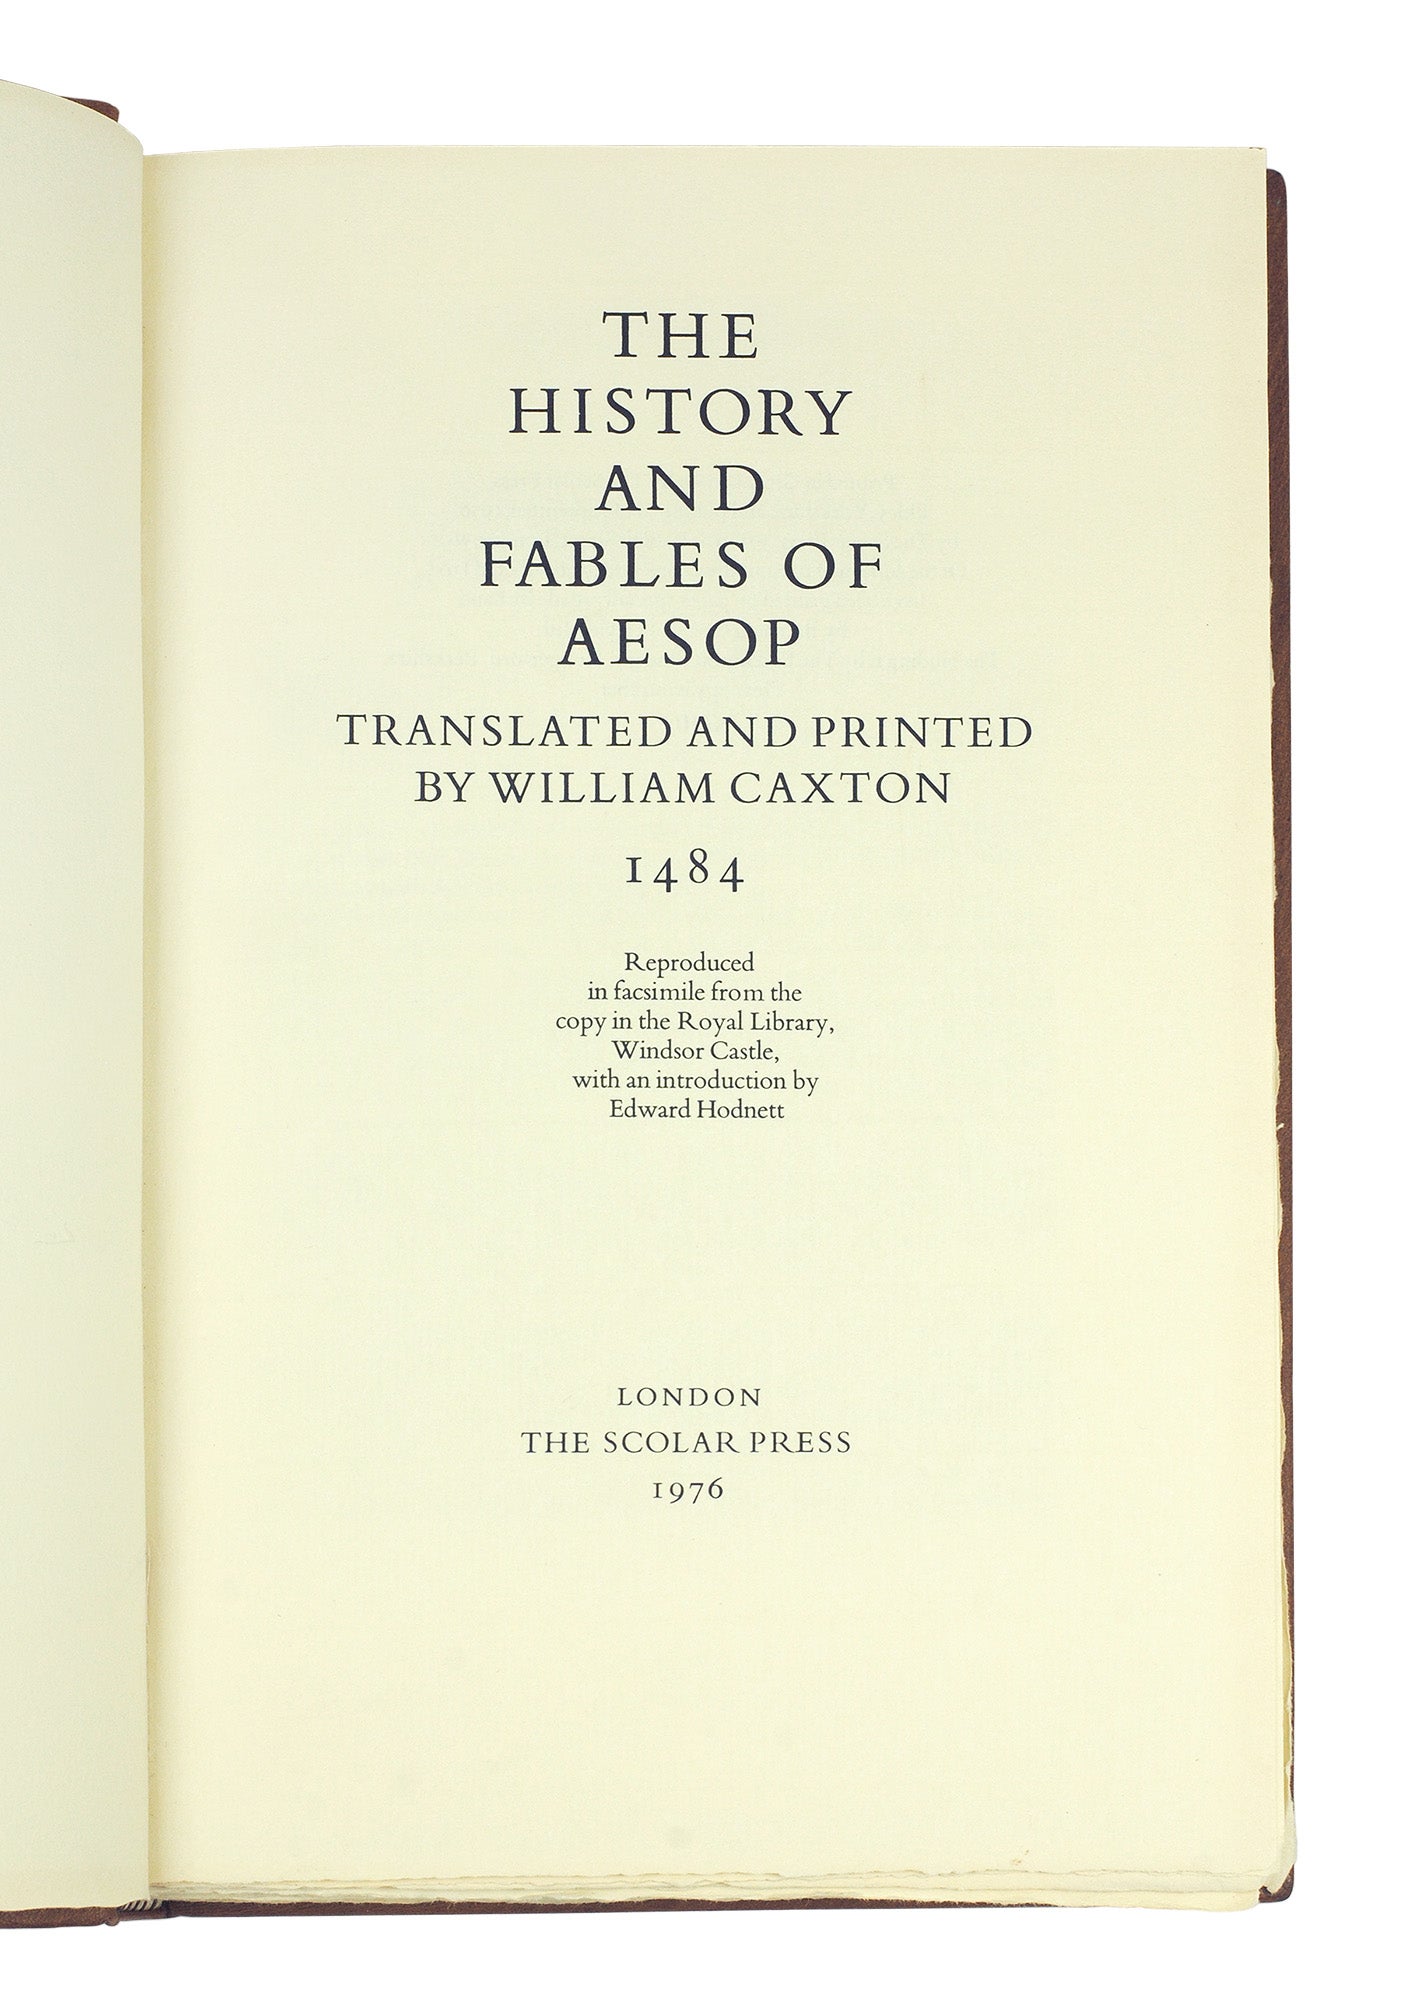 お得最安値カクストン『The History and Fables of Aesop』限定500部 1976年刊 初期印刷本「イソップ寓話」インキュナブラ ウィリアム・キャクストン 画集